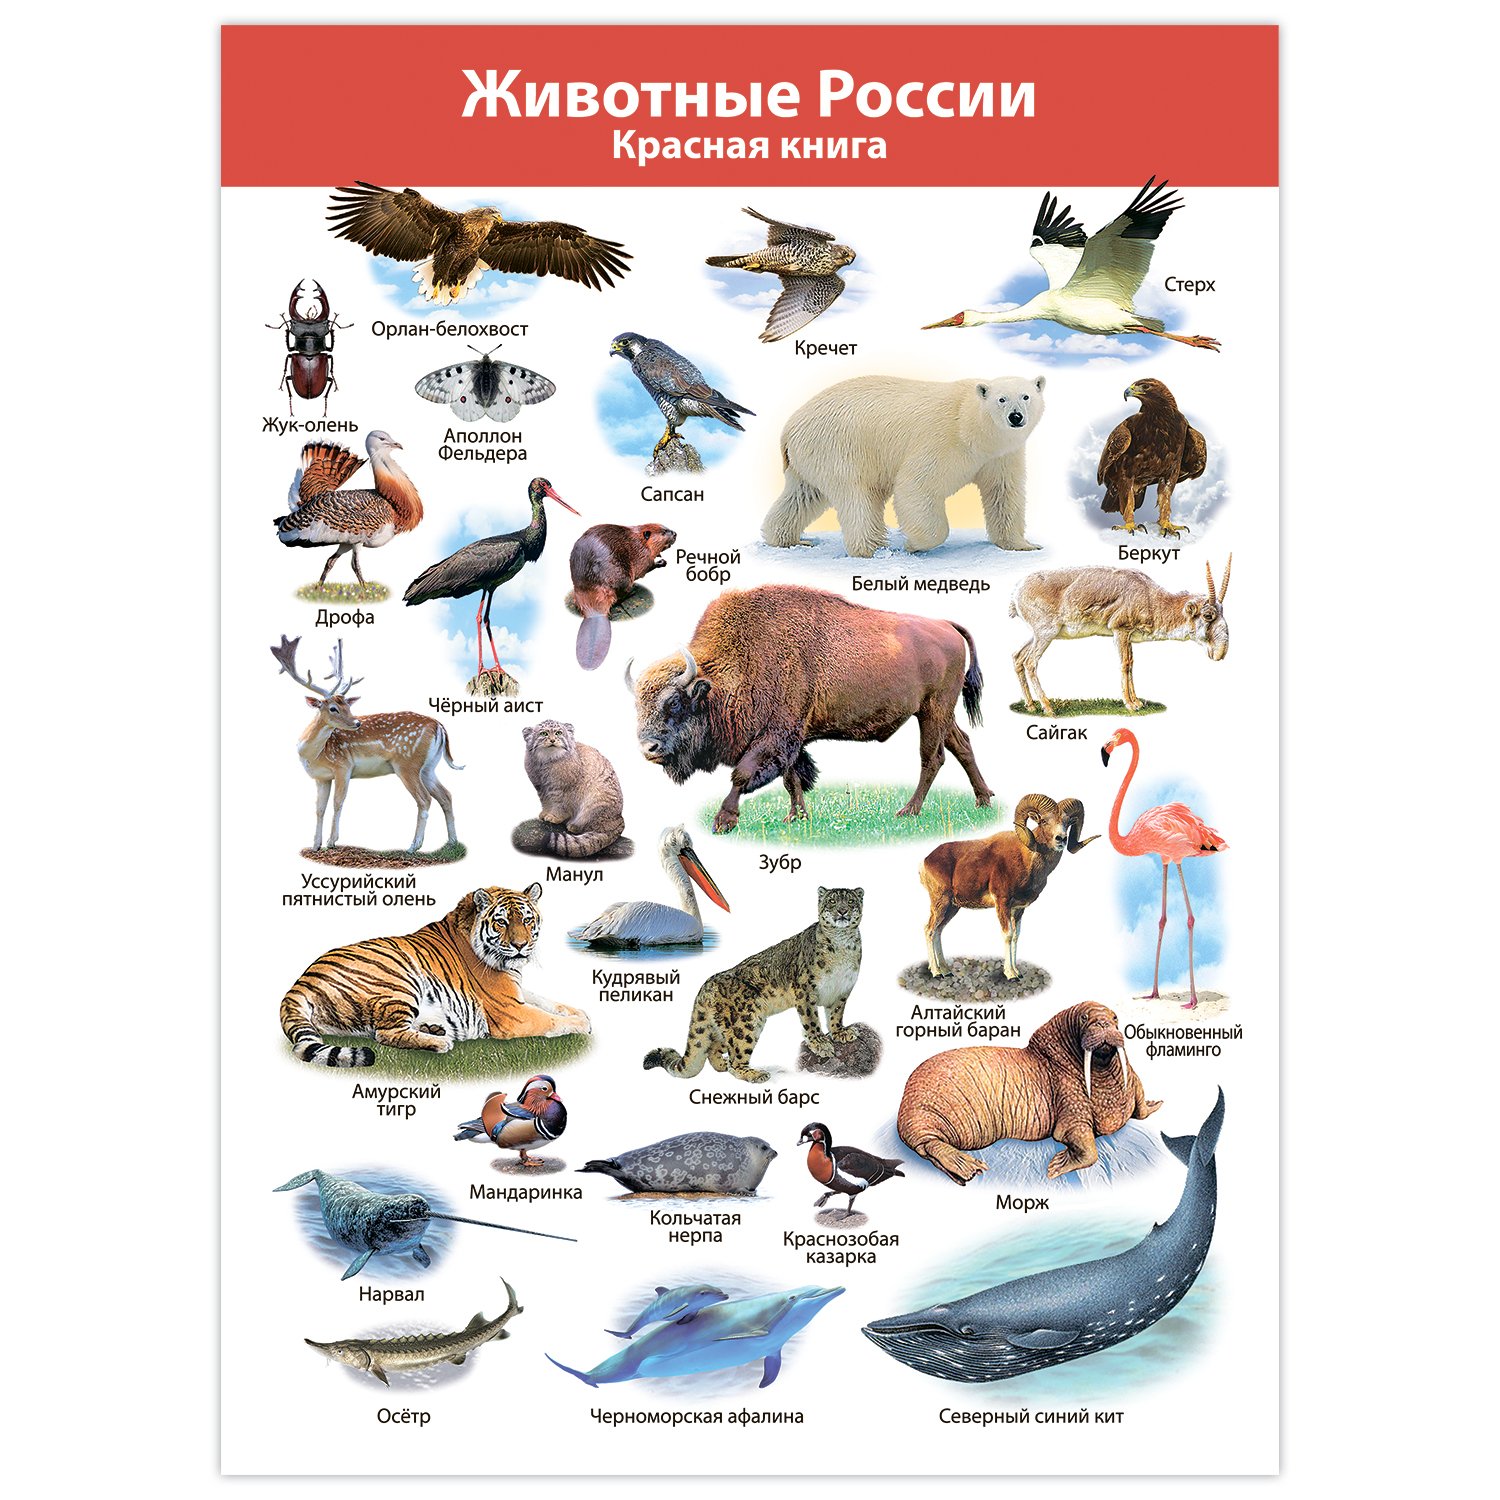 Обитатели северной америки. Плакат. Животные. Животные Северной Америки. Плакат с животными. Животные севера плакат.